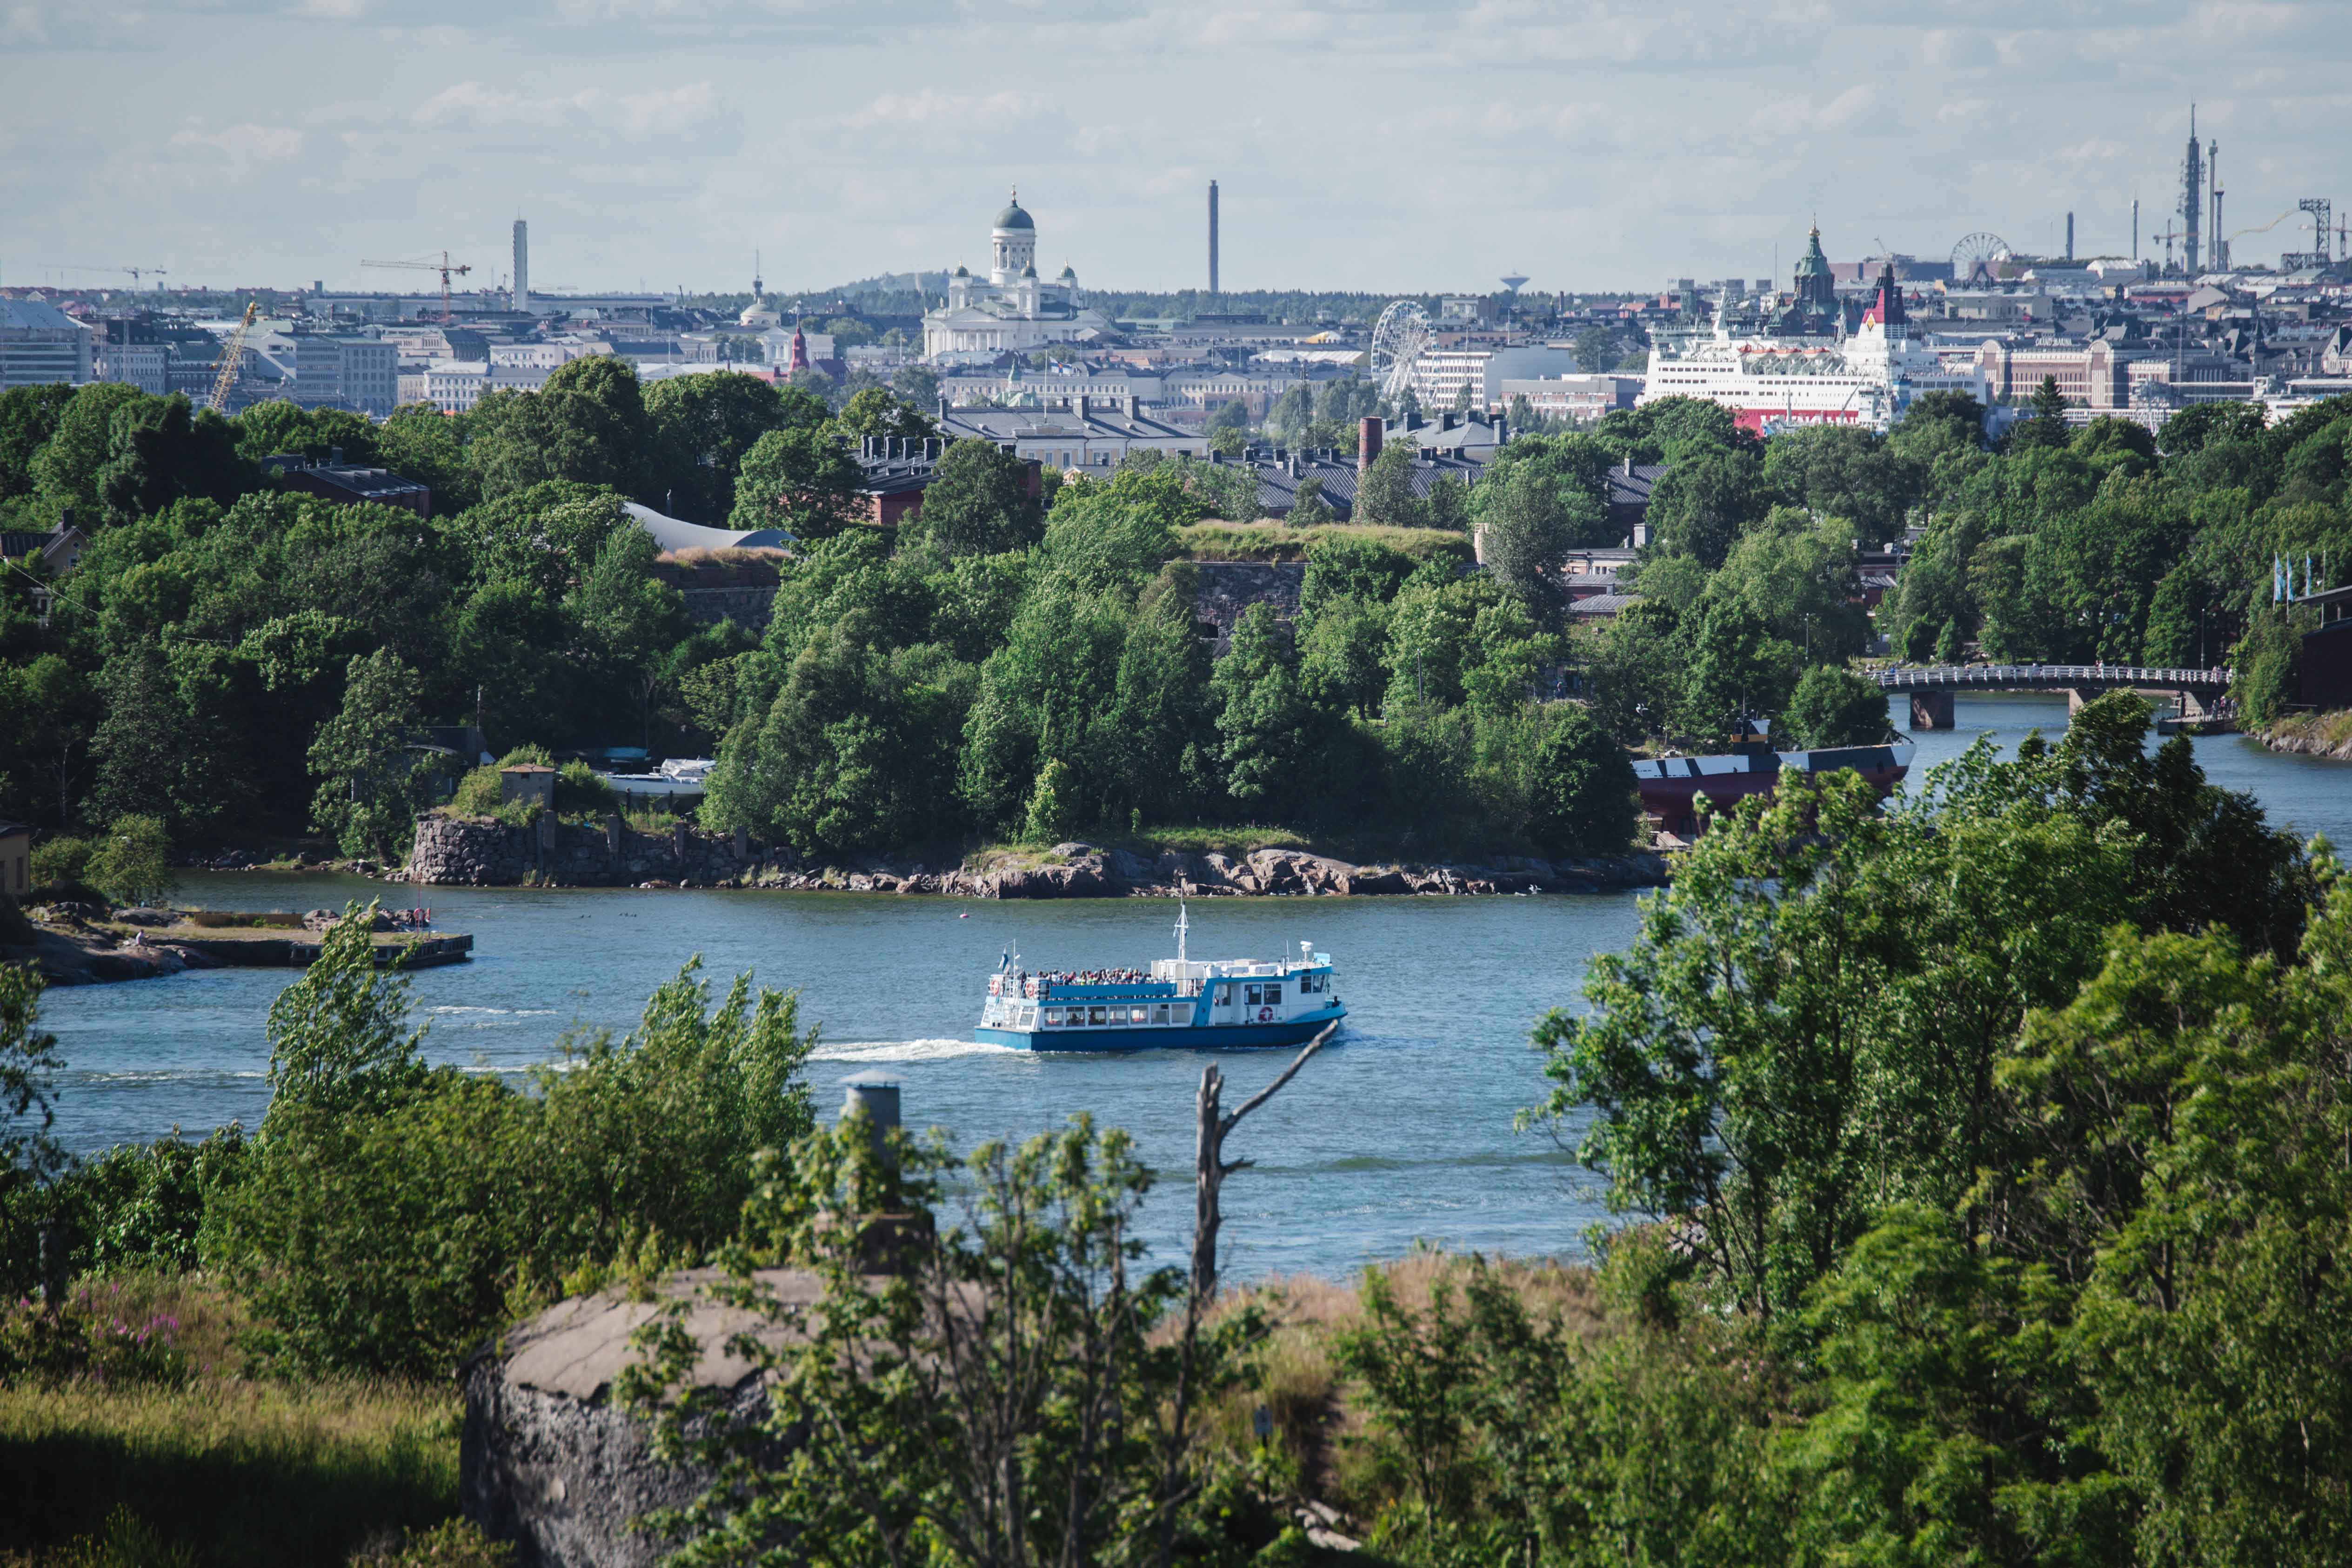 Helsinki_Islands_08_Vallisaari_city view_ferry - Julia Kivelä_optimized.jpg - Julia Kivelä